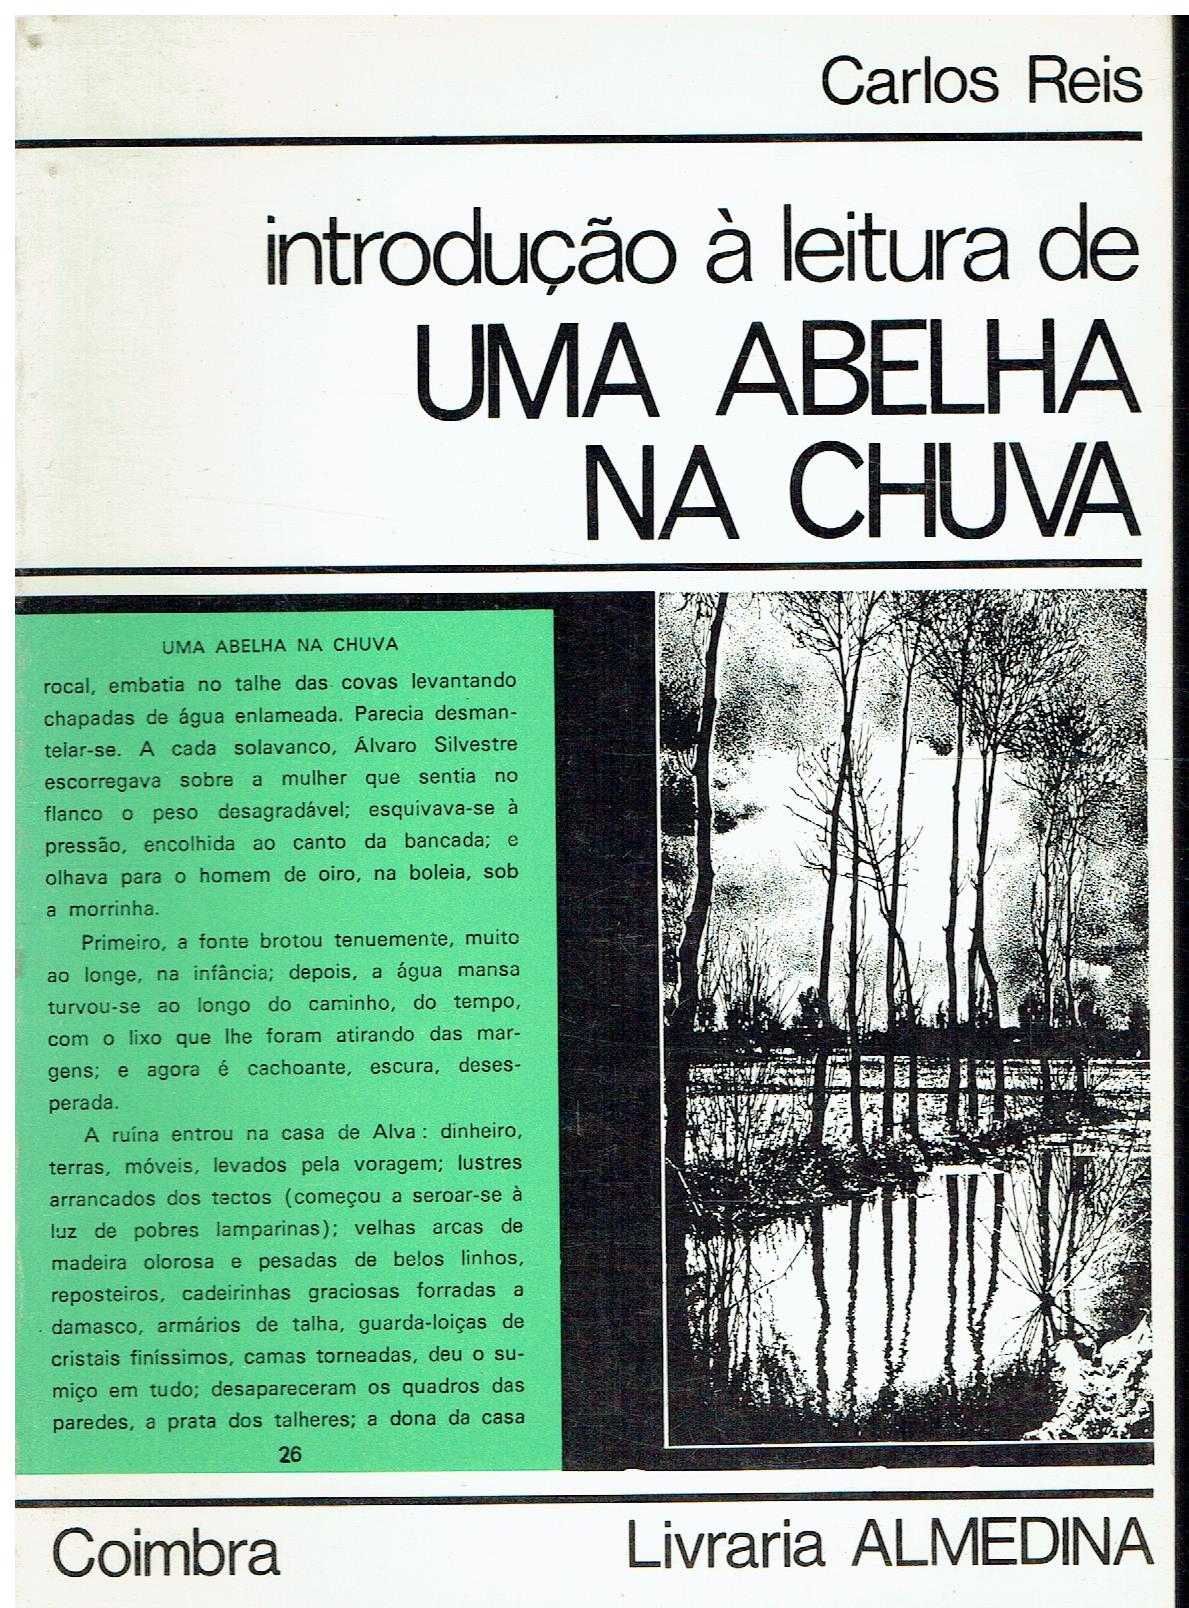 4706 - Livros de Carlos de Oliveira